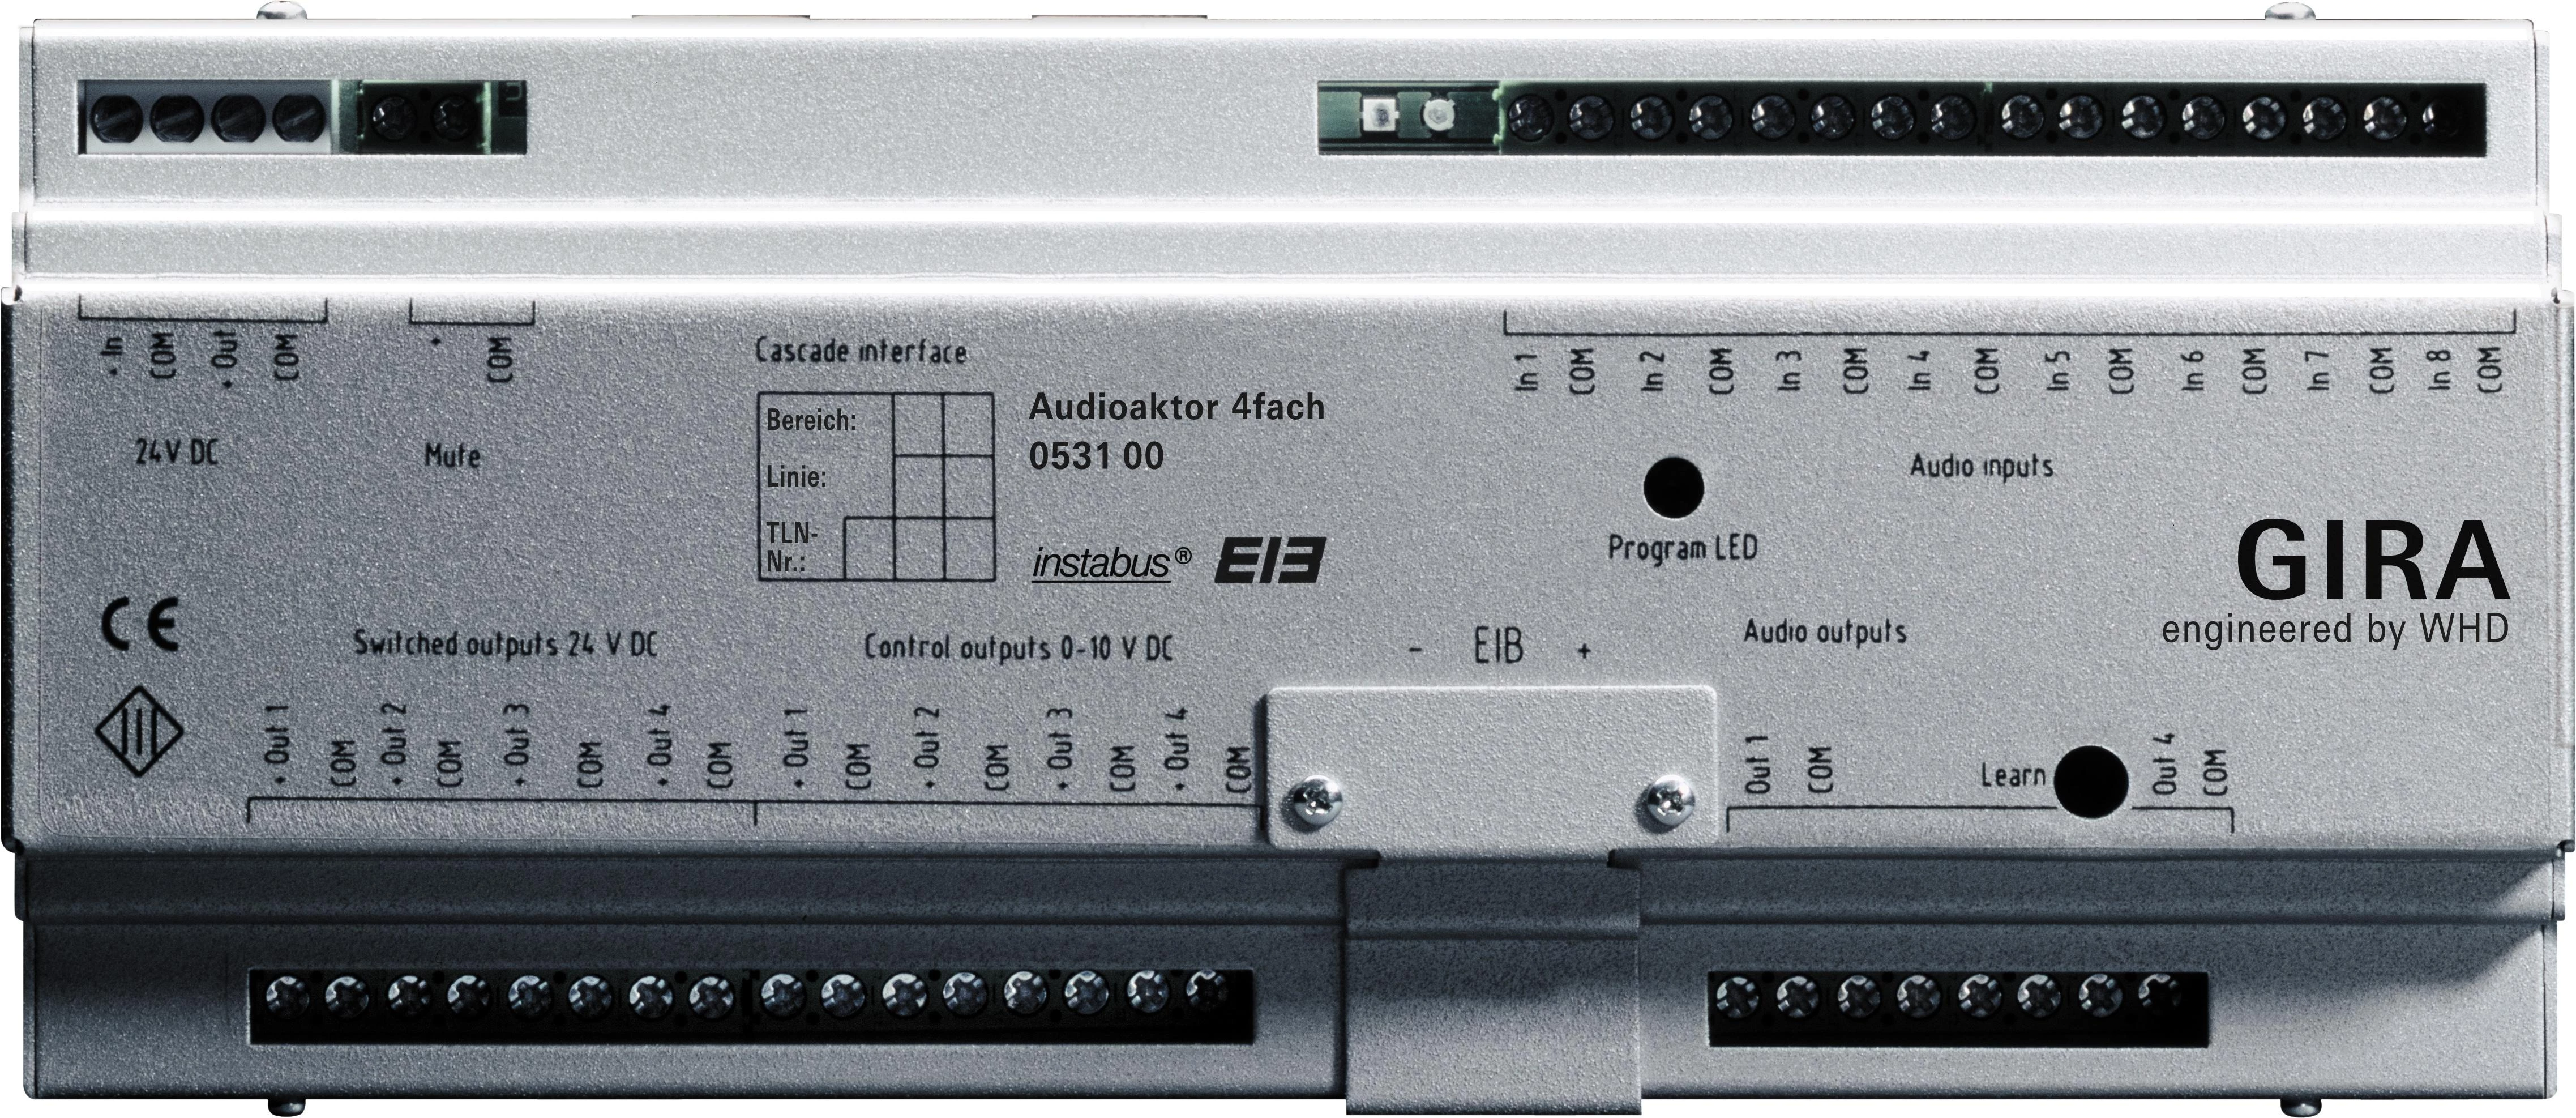  артикул 53100 название Gira Instabus Аудиораспределитель 4-х канальный на DIN-рейку